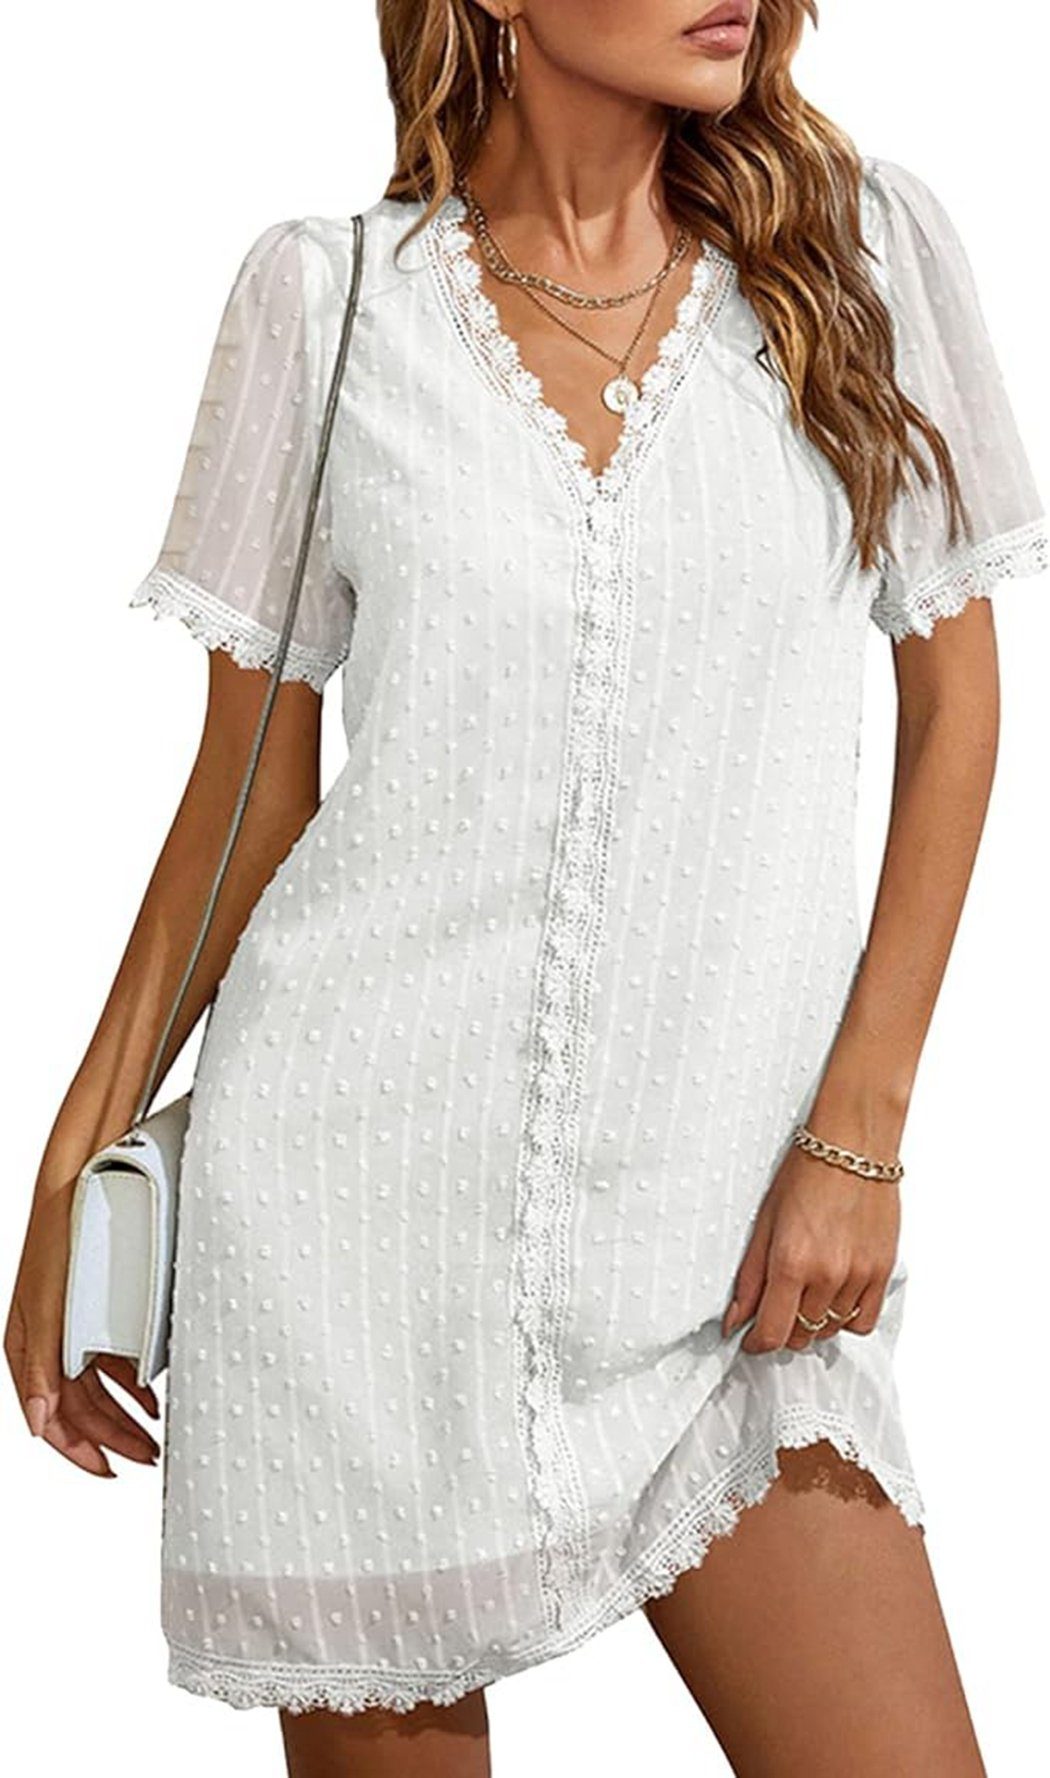 VOCTVTB Shaping-Kleid Spitzenkleid, elegantes, lockeres Freizeitkleid, lässiges Partykleid Weiß